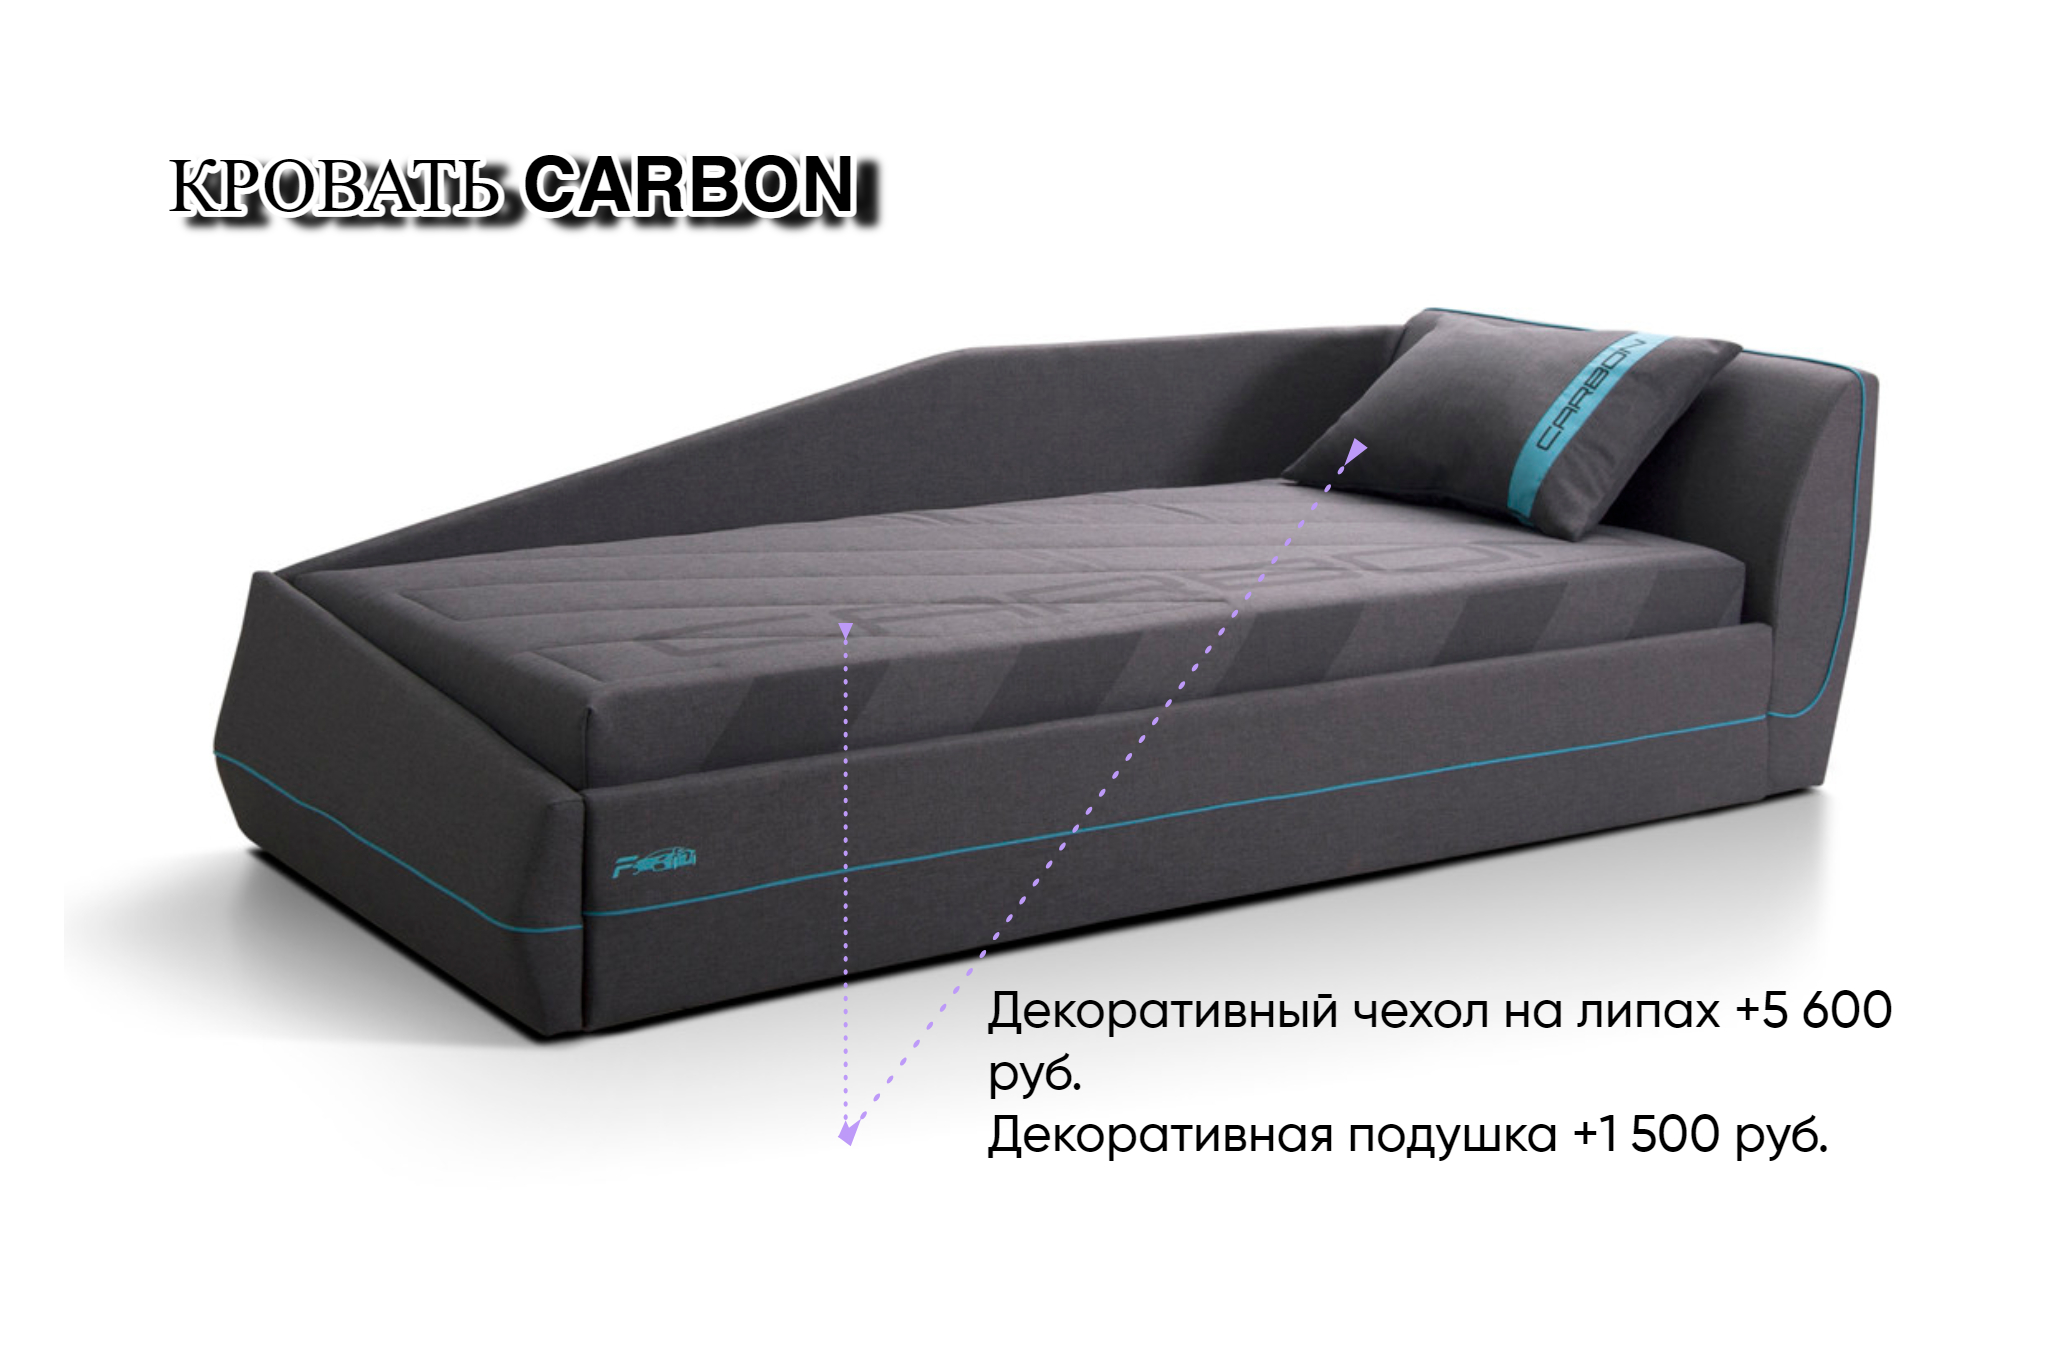 Кровать Карбон с матрасным блоком